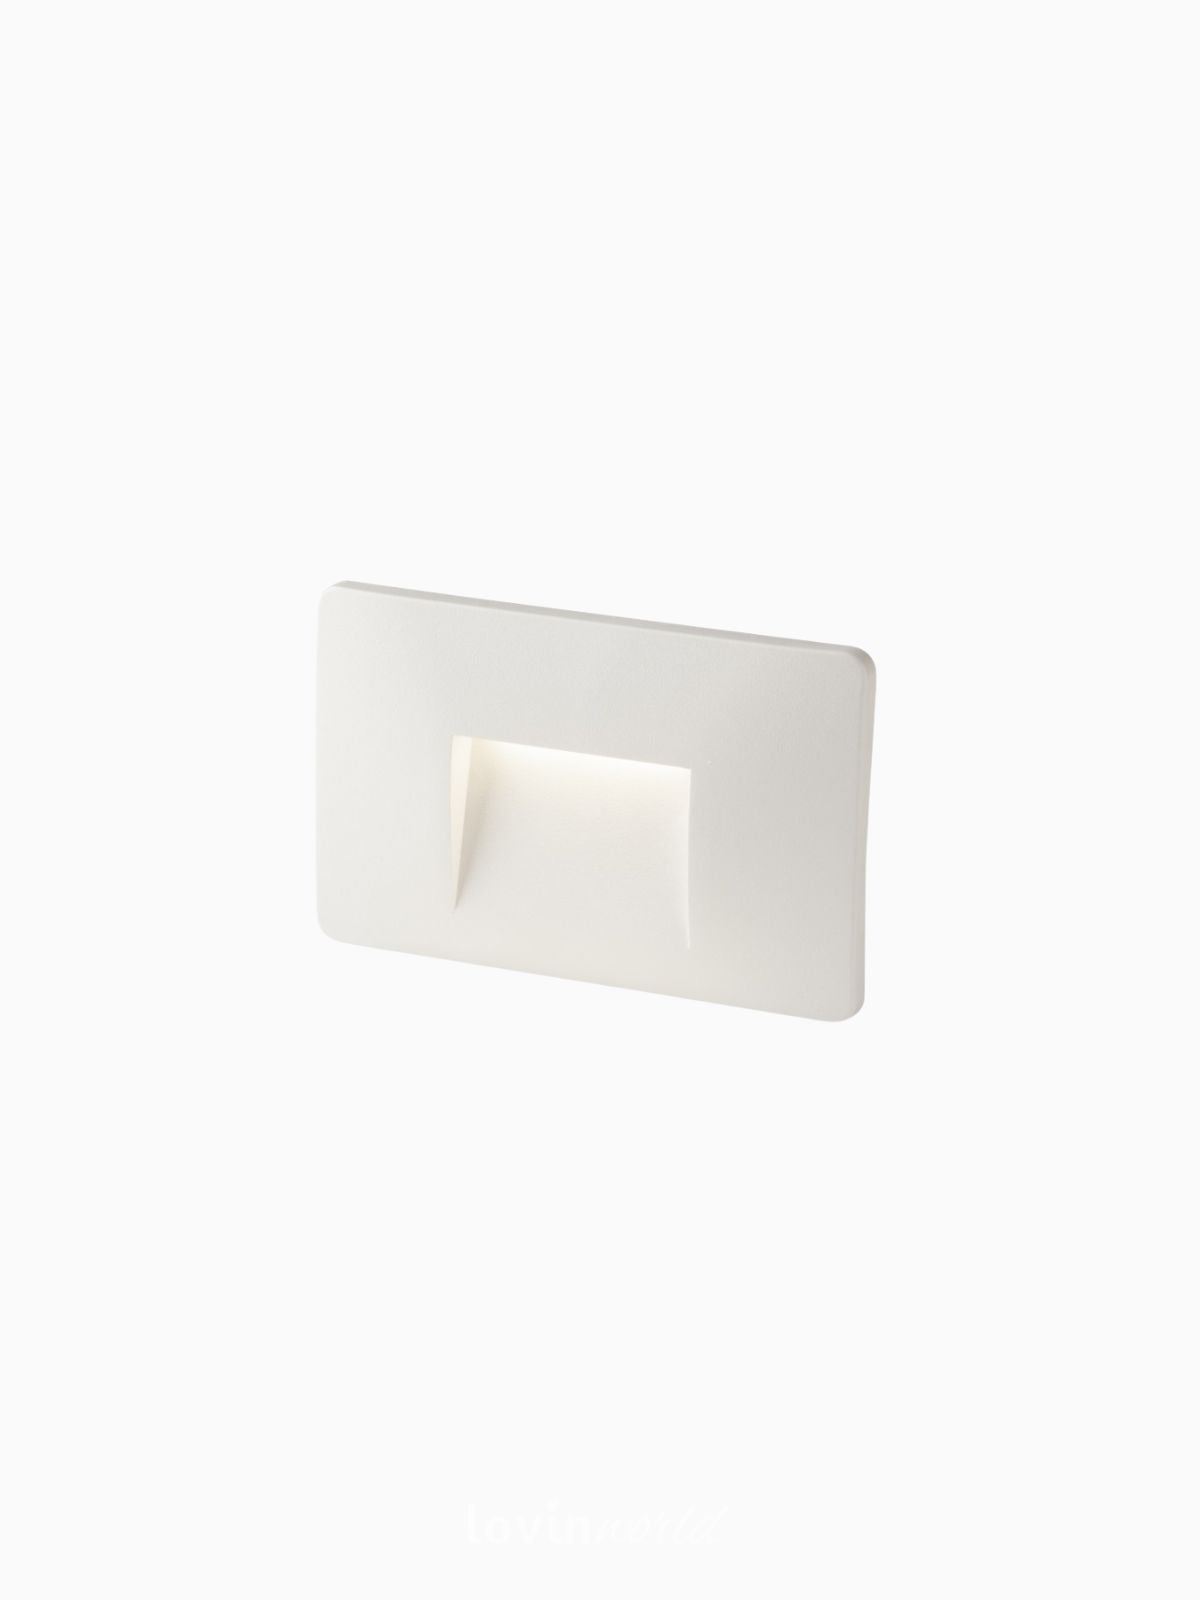 Segnapassi da esterno LED Breen in policarbonato, colore bianco-1